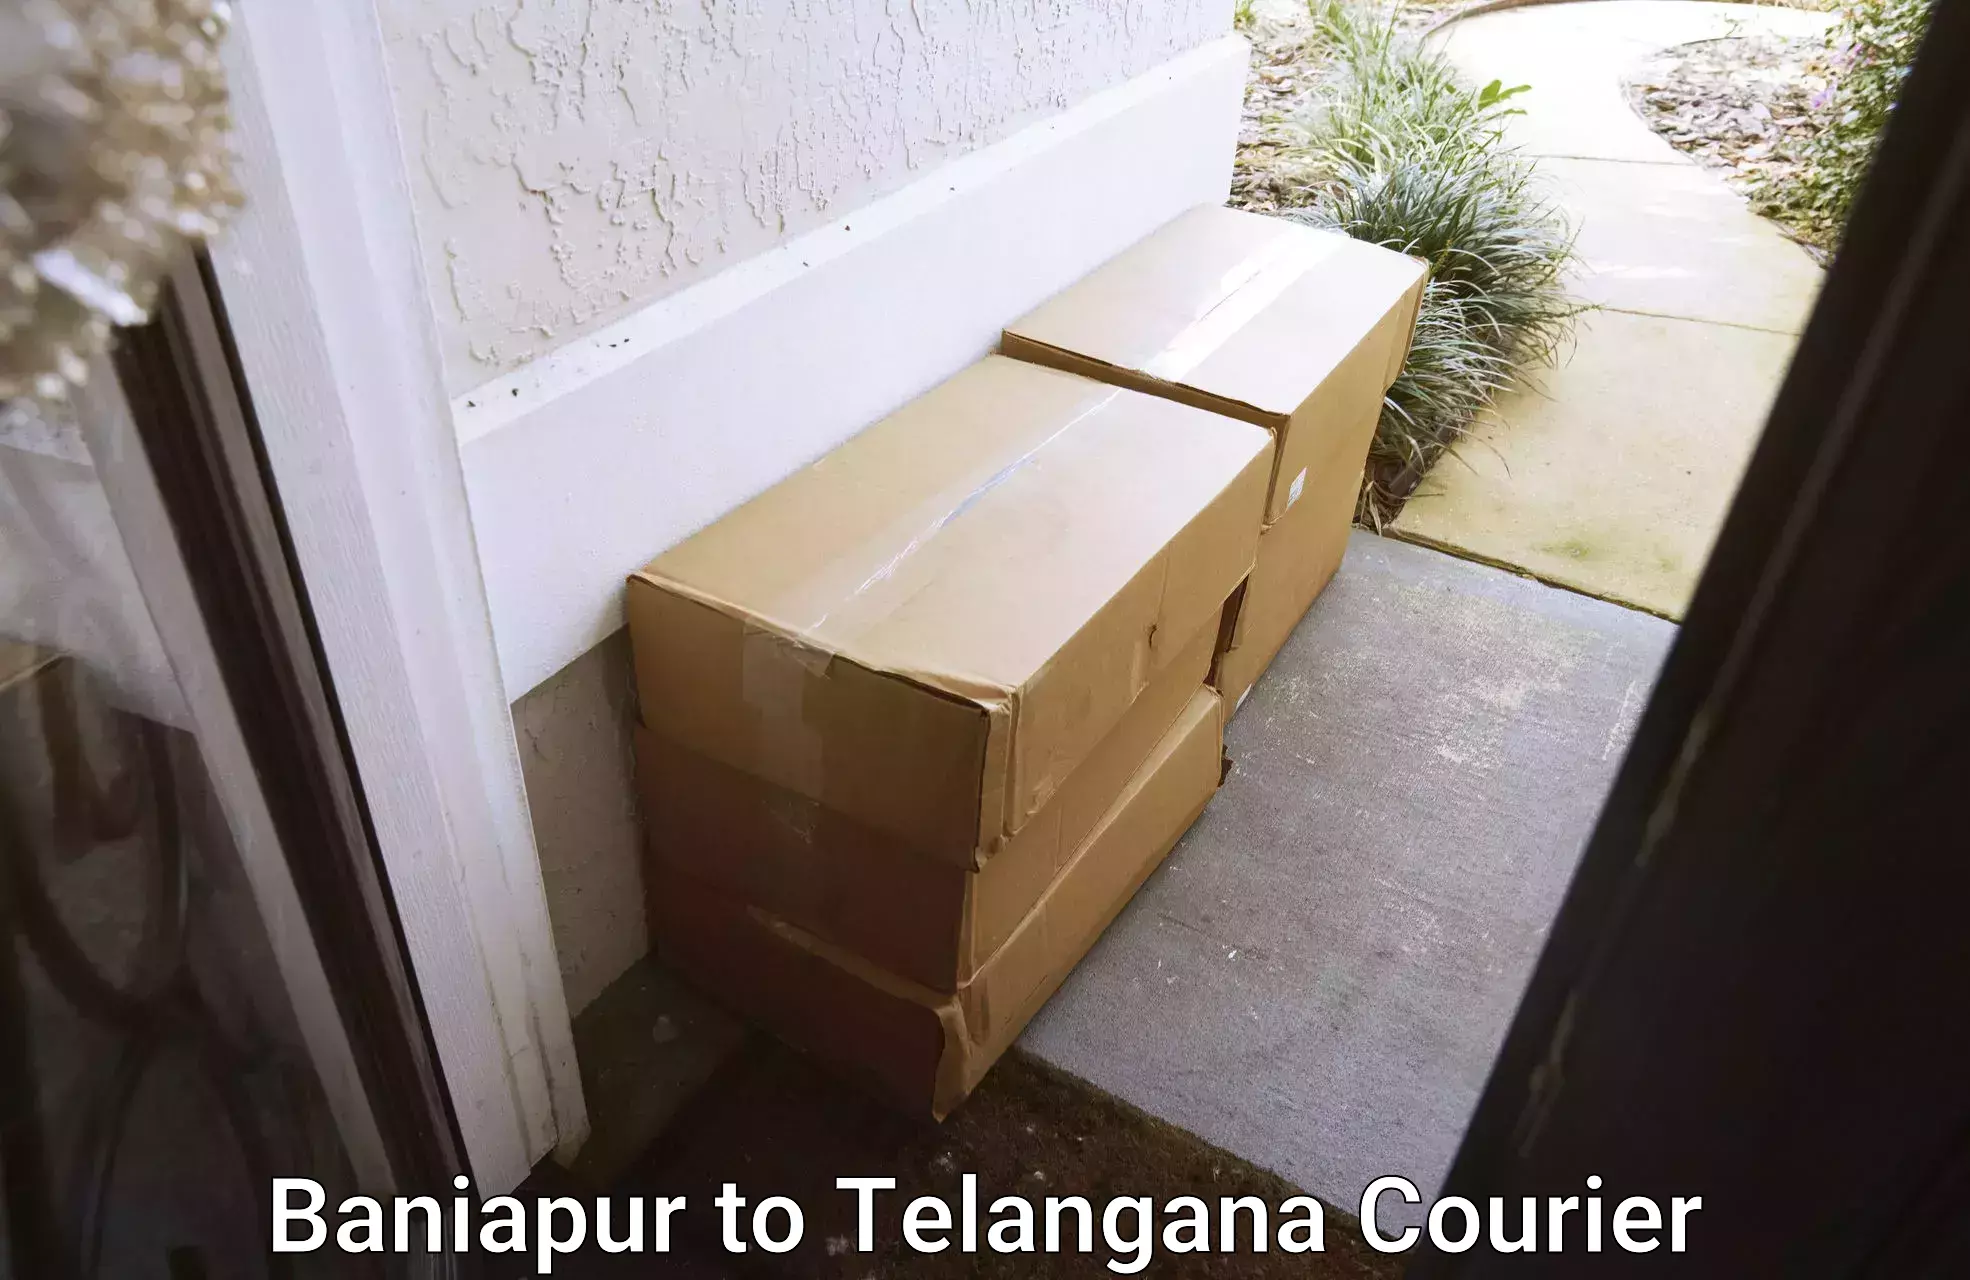 Quality furniture transport Baniapur to Tiryani